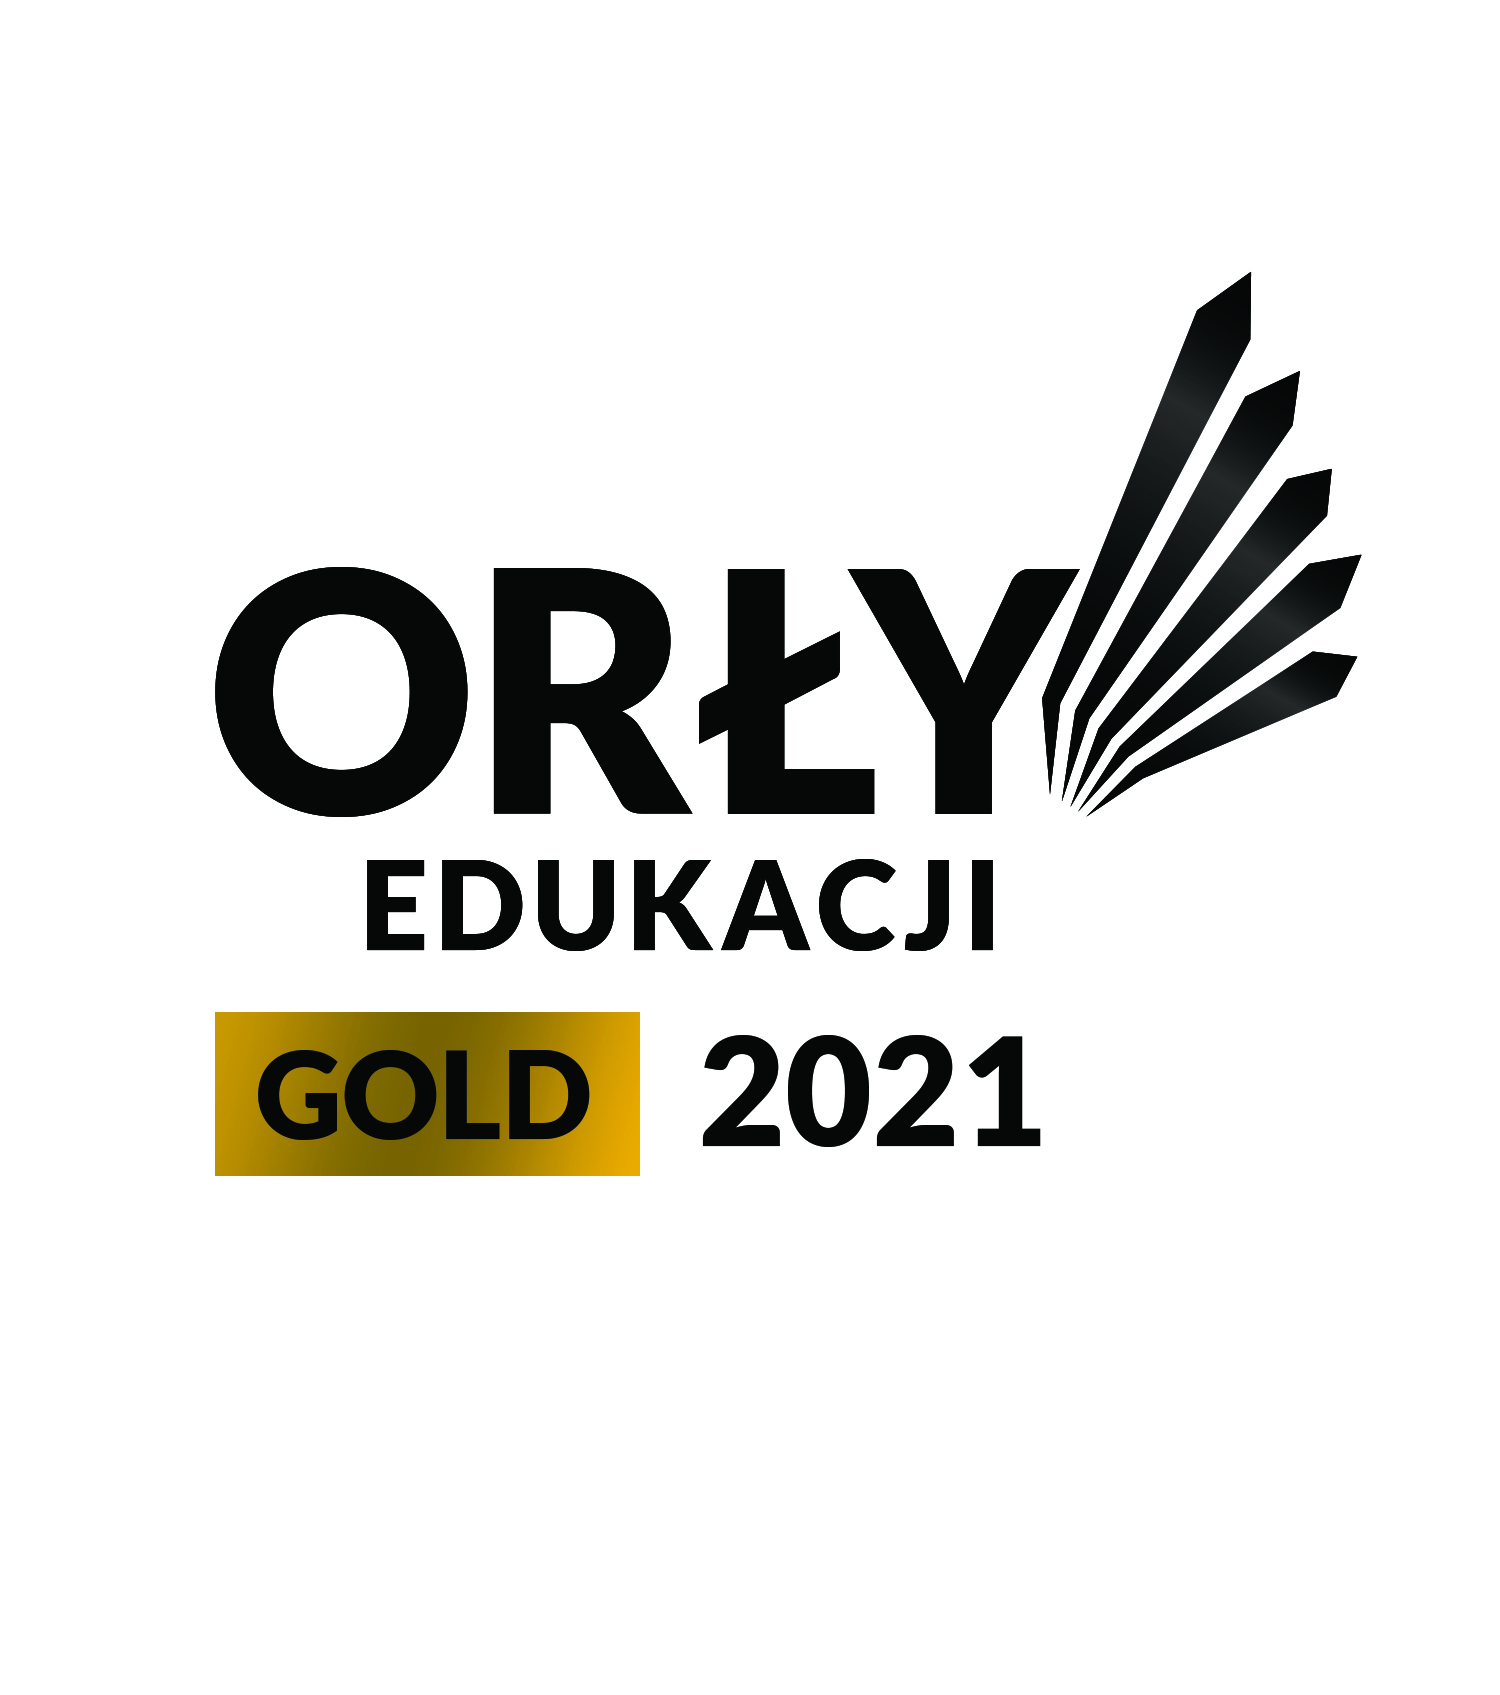 edukacji-2021-logo-gold-1500